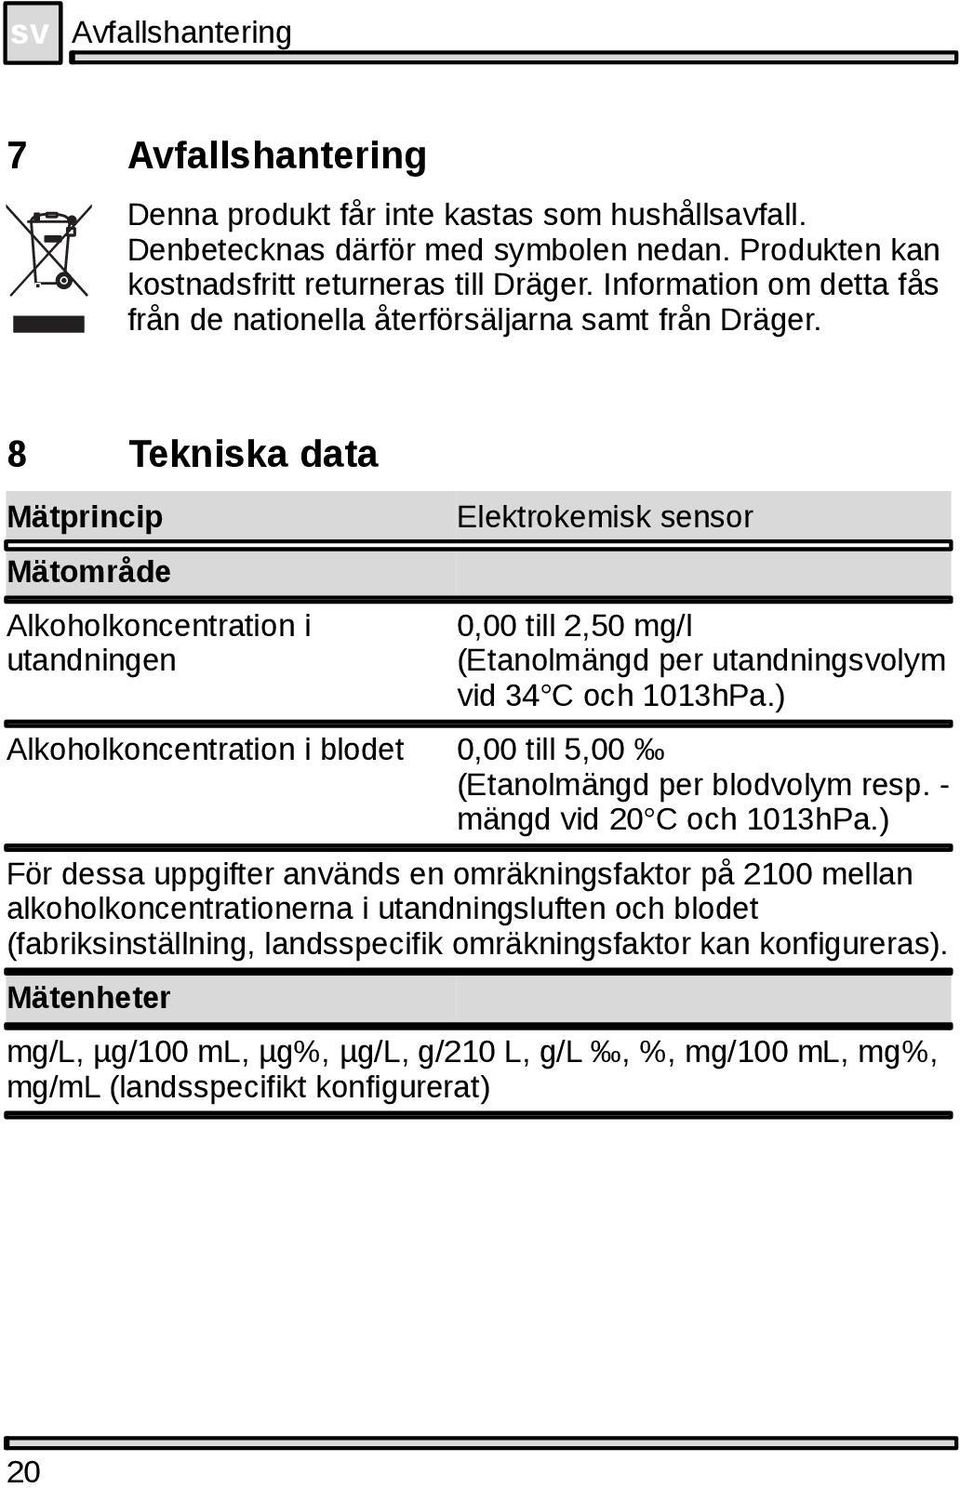 8 Tekniska data Mätprincip Mätområde Alkoholkoncentration i utandningen Elektrokemisk sensor 0,00 till 2,50 mg/l (Etanolmängd per utandningsvolym vid 34 C och 1013hPa.